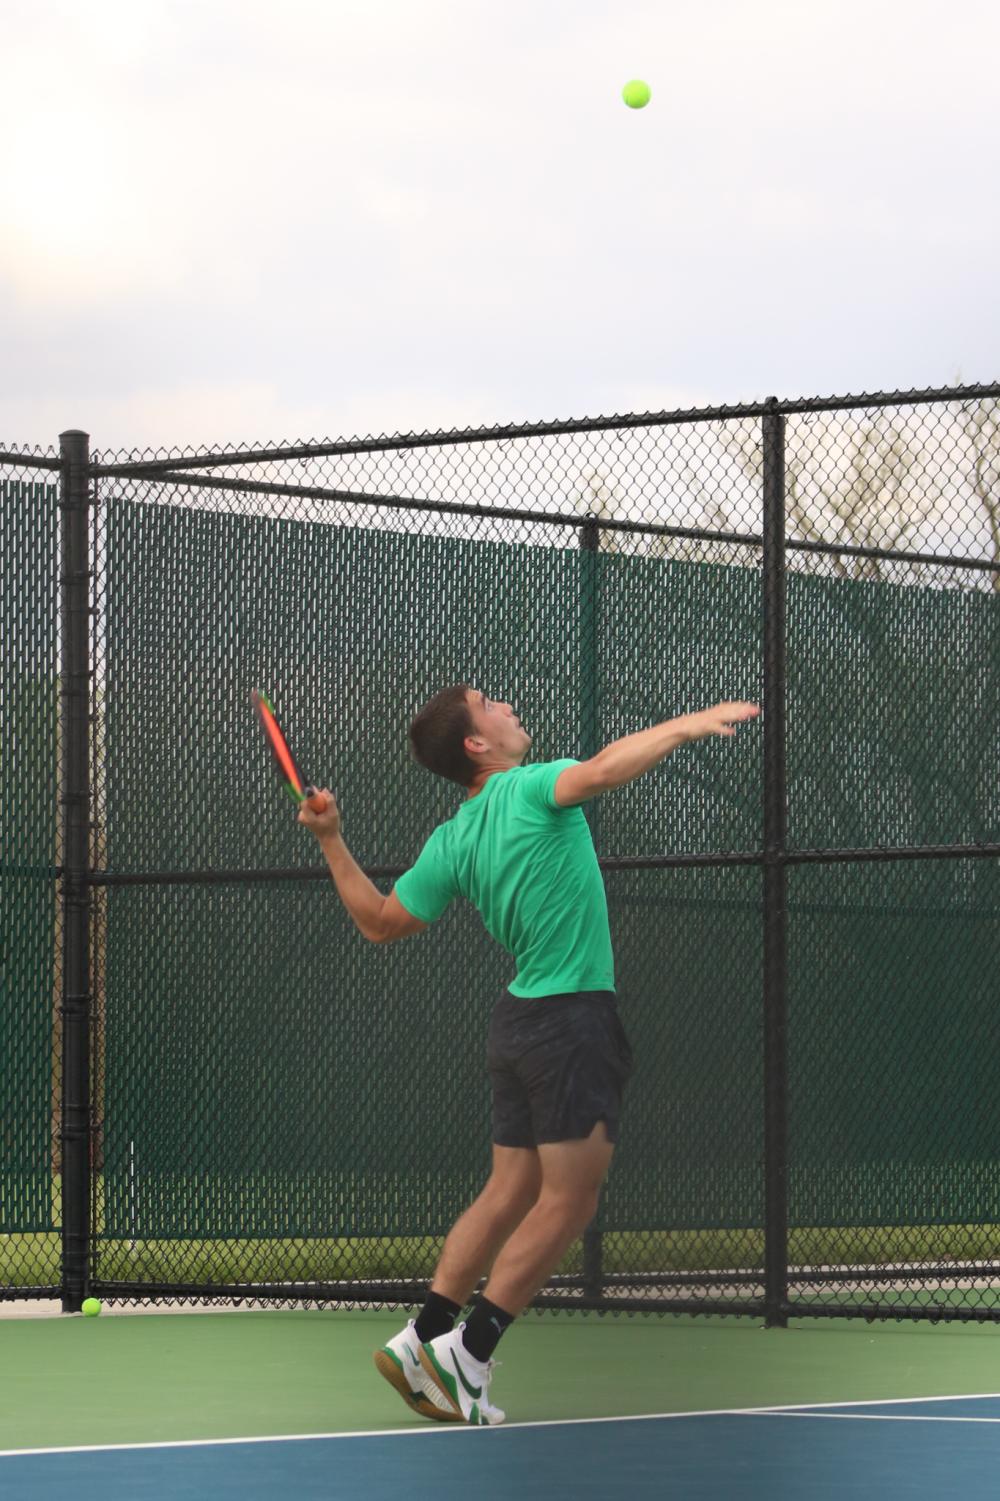 Varsity+Tennis+Tournament+%40+Campus+%28Photos+by+Zara+Thomas%29